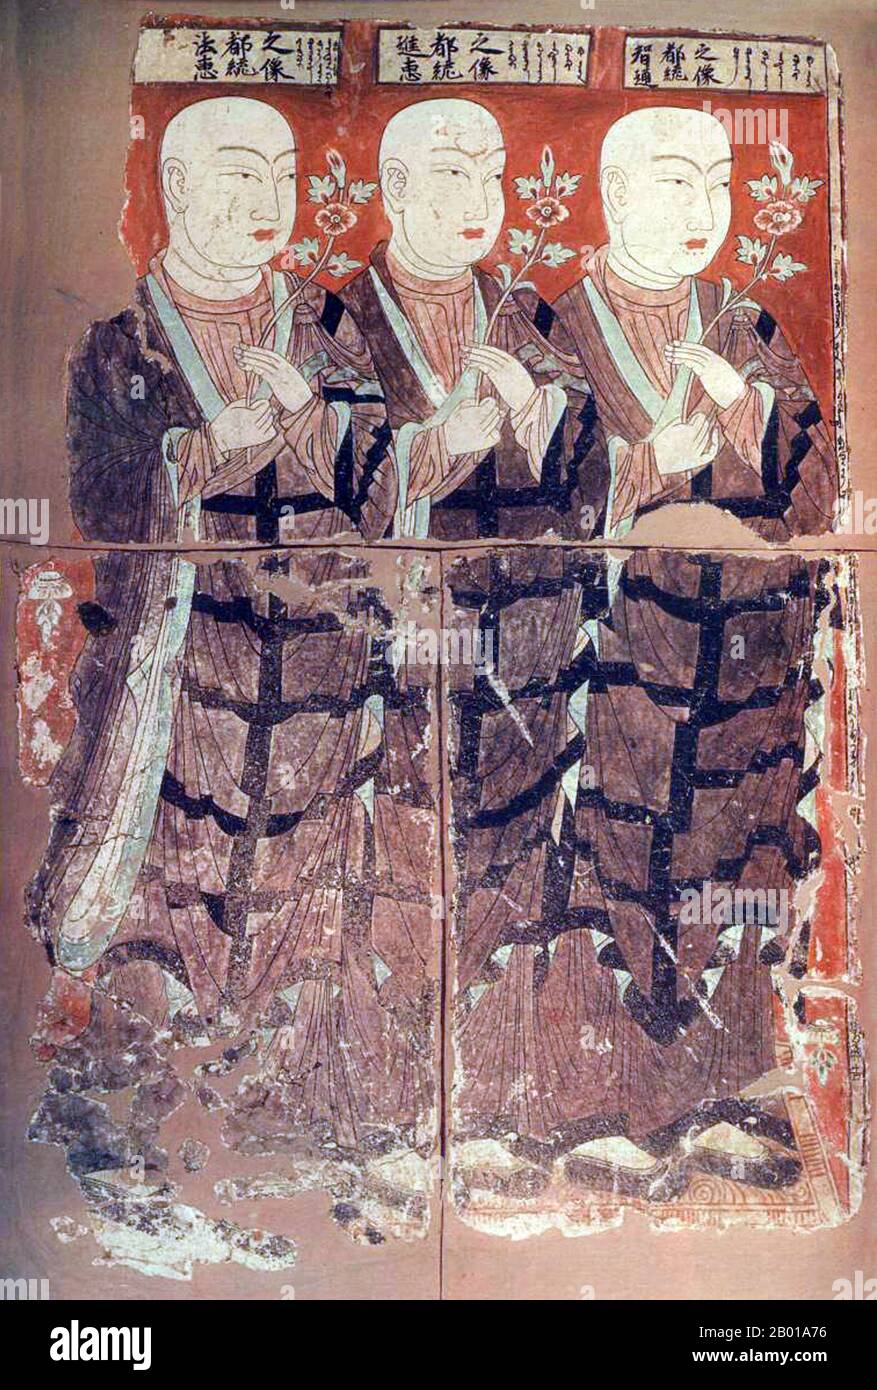 Chine : trois prêtres manichéens. Murale de Gaochang, Turfan, Xinjiang, 8th-9th siècle. Le manichéisme était l'une des principales religions gnostiques iraniennes, originaires de la Perse sassanide. Bien que la plupart des écrits originaux du prophète fondateur Mani (c. 216–276 AD) ont été perdus, de nombreuses traductions et textes fragmentaires ont survécu. Le manichéisme enseignait une cosmologie élaborée décrivant la lutte entre un bon monde spirituel de lumière et un monde matériel et mauvais des ténèbres. Banque D'Images